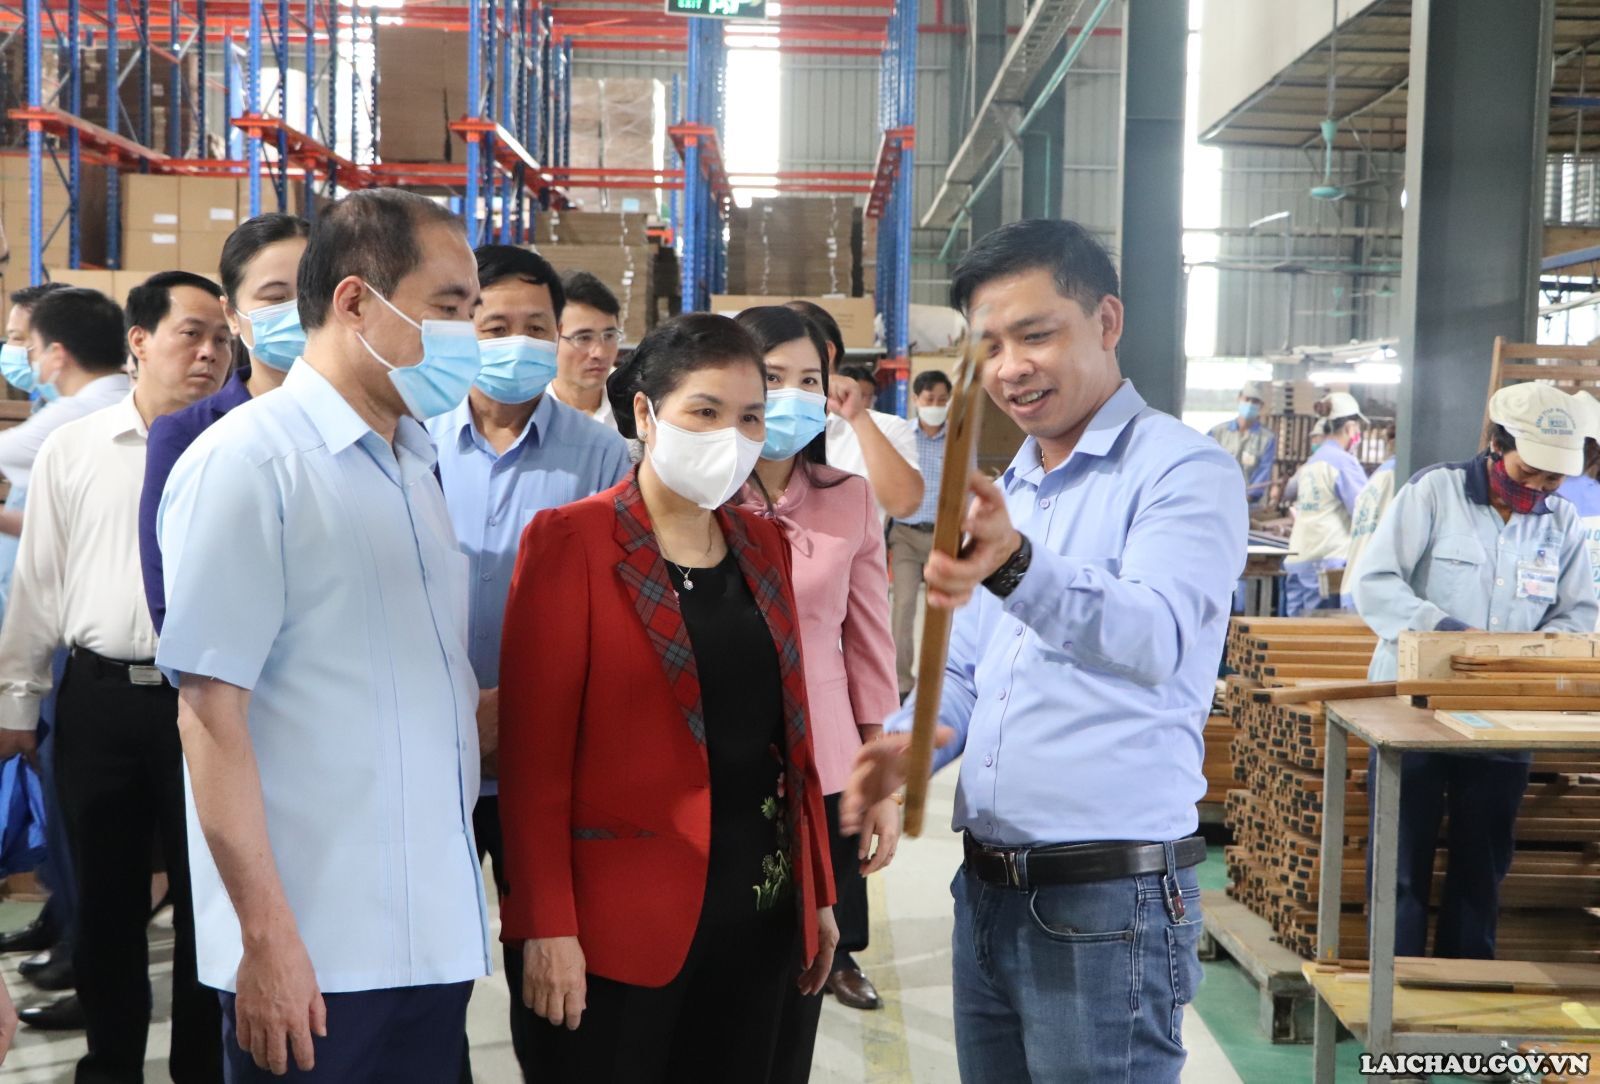 Đoàn công tác tỉnh Lai Châu thăm chương trình phát triển rừng của tỉnh Tuyên Quang